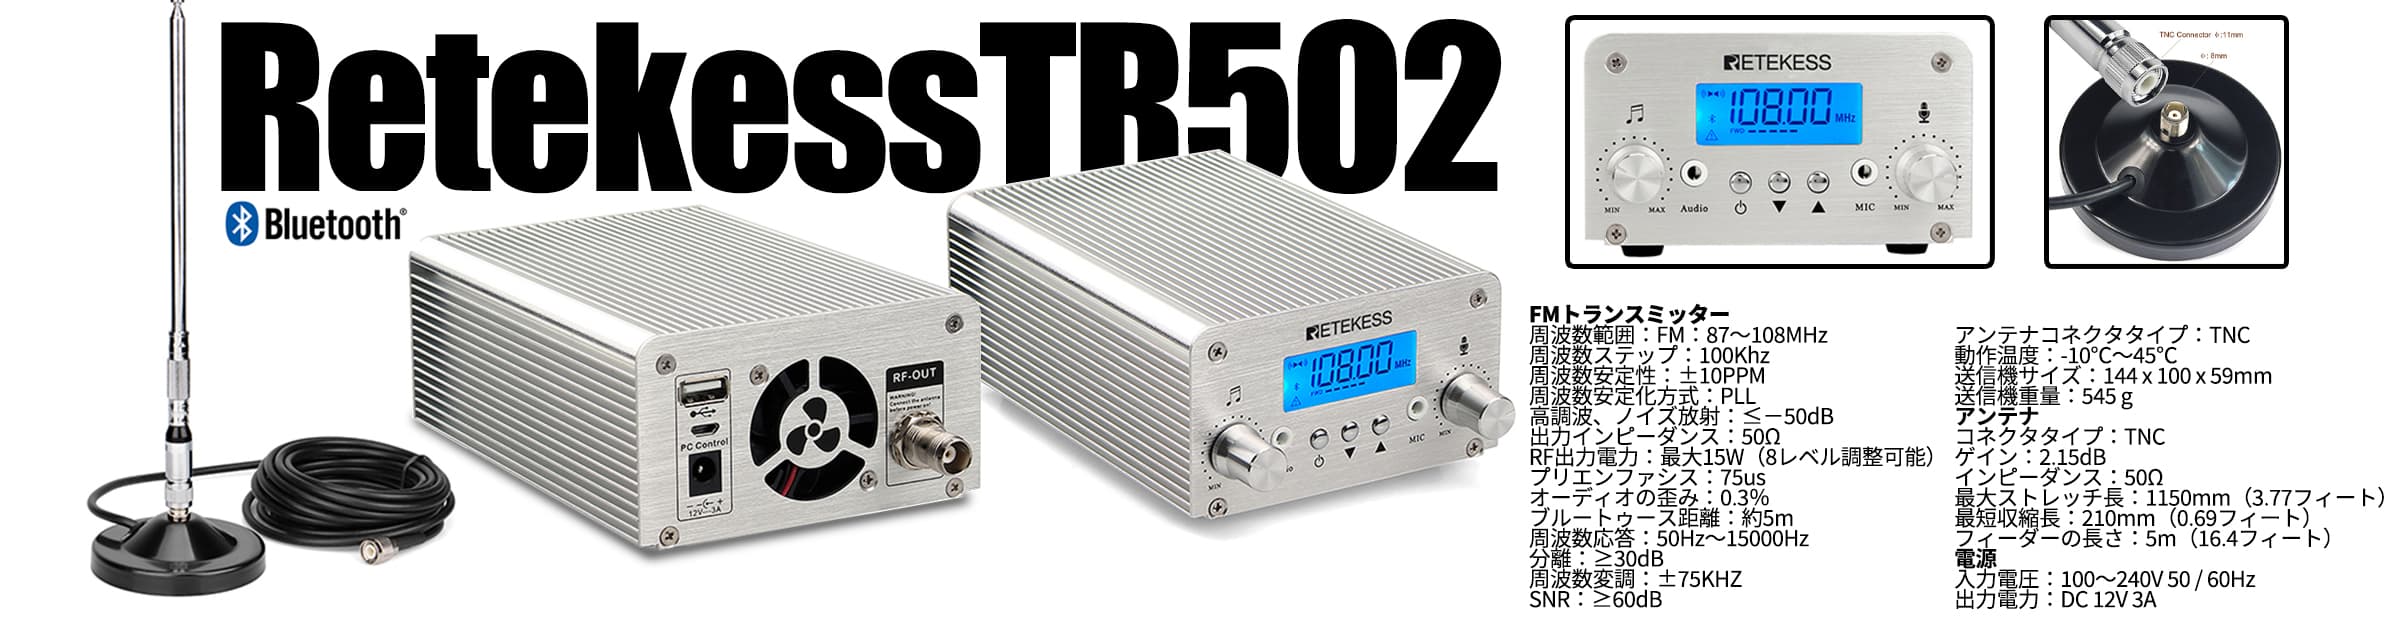 RetekessTR502 15W FM放送トランスミッター